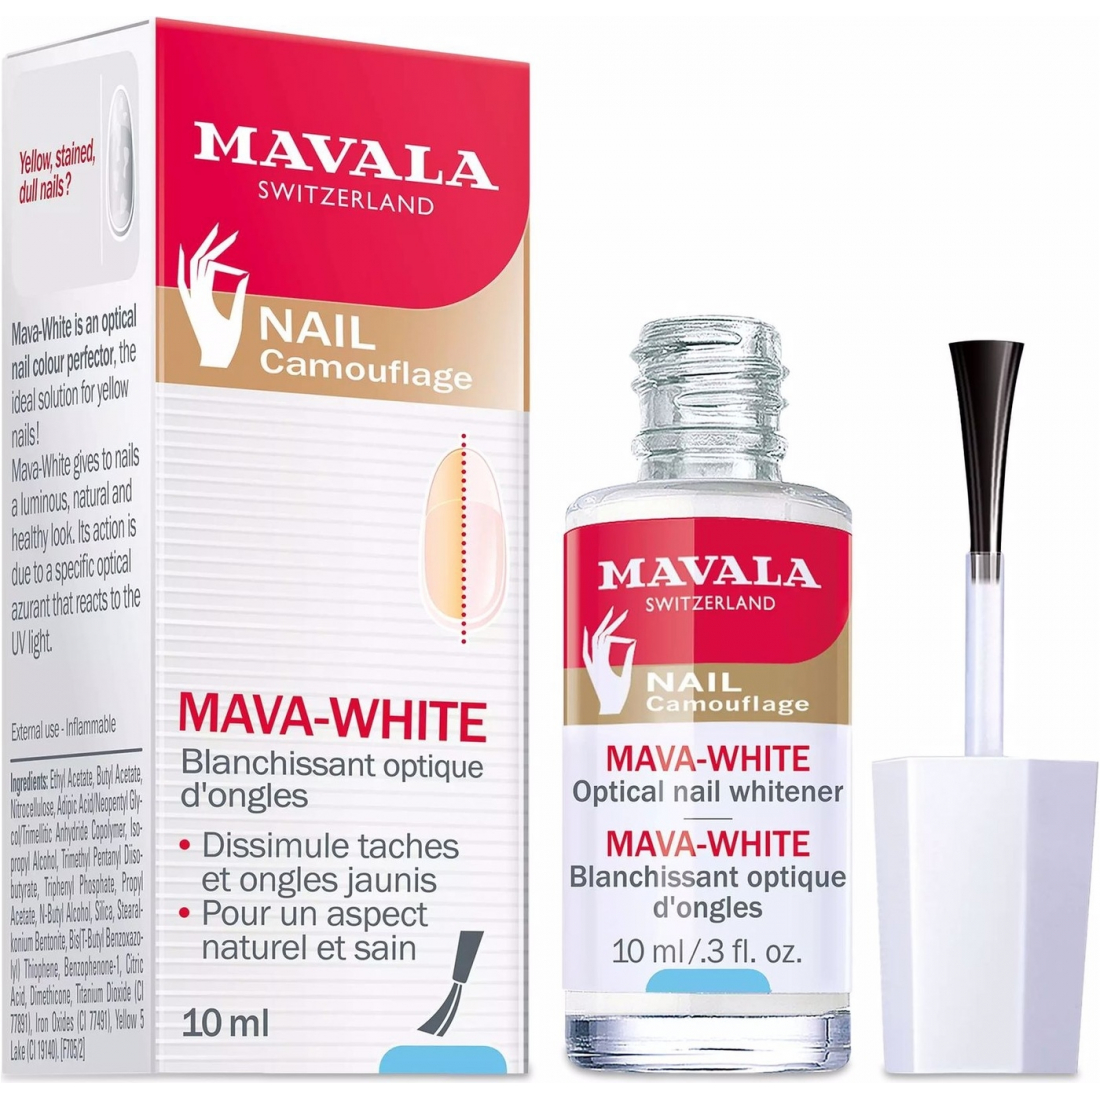 'Mava-White' Nail Whitener - 10 ml